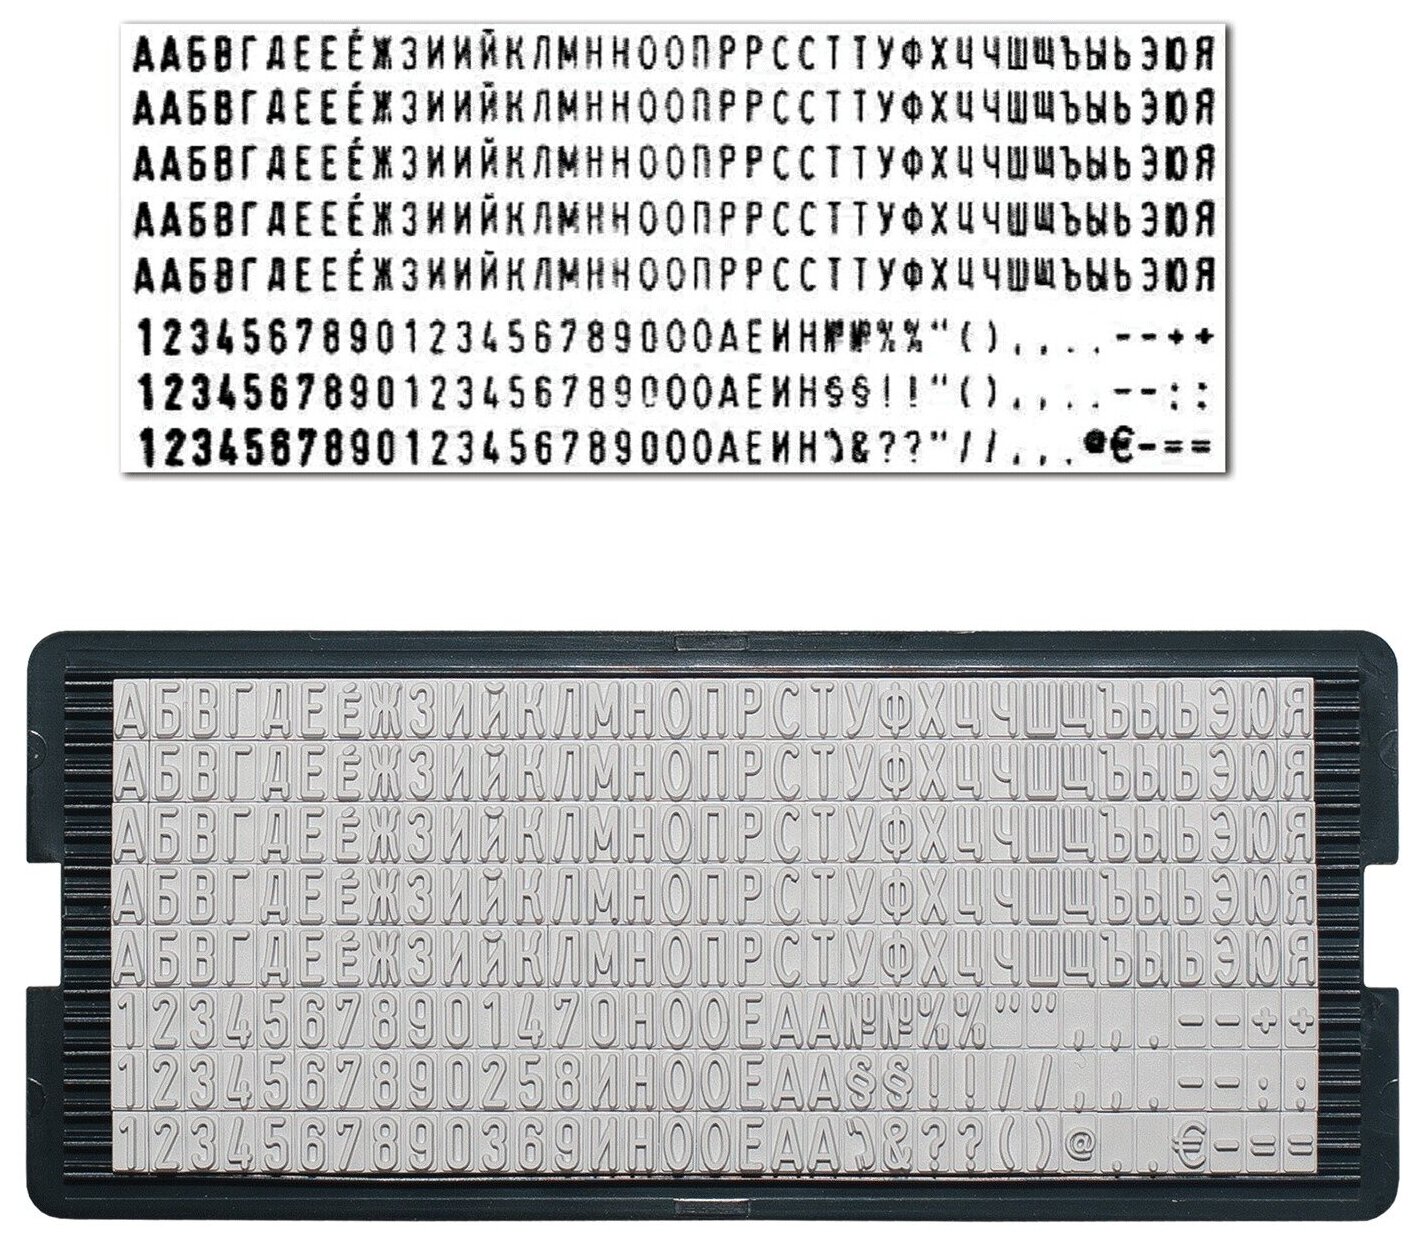 Касса русских букв и цифр Trodat для самонаборных печатей и штампов , 264 символа, шрифт 4 мм 64312